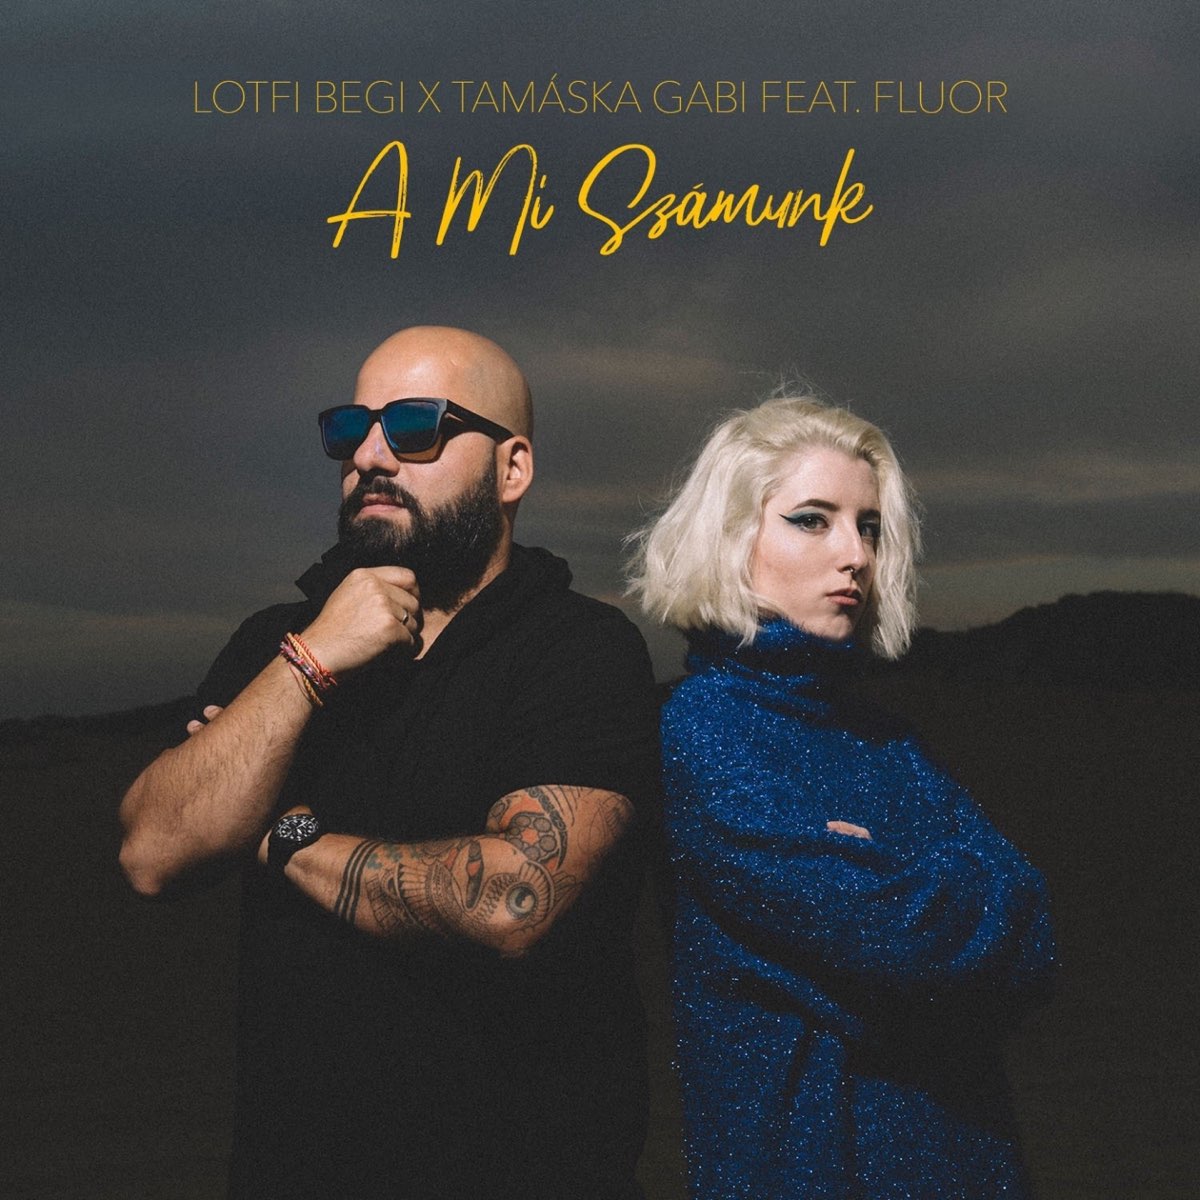 A mi számunk (feat. Fluor) - Single - Album by Lotfi Begi & Tamáska Gabi -  Apple Music